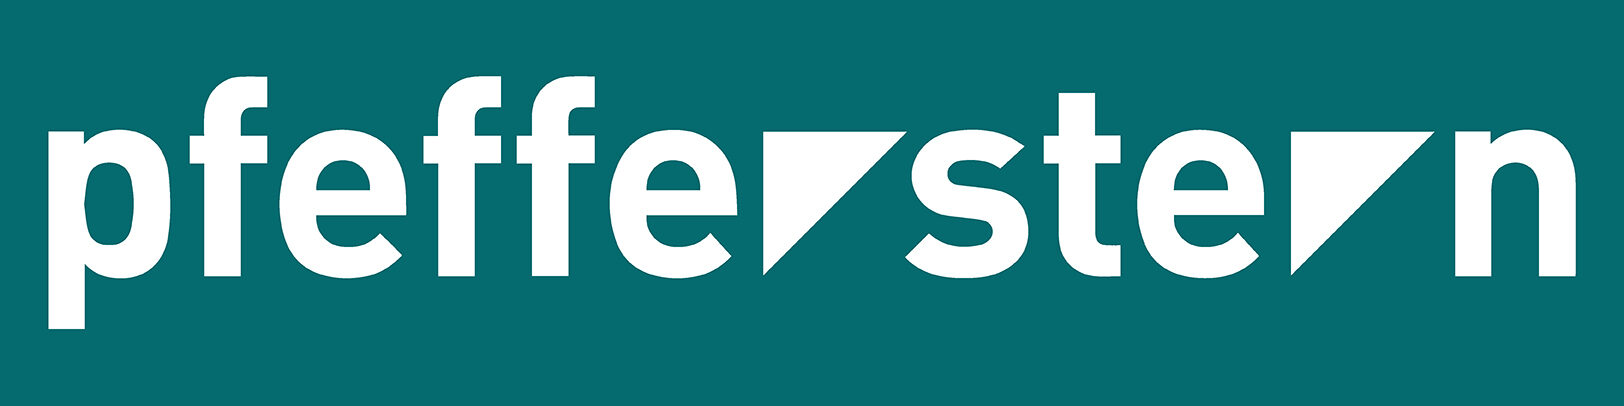 Logo pfefferstern mit farbigem Hintergrund